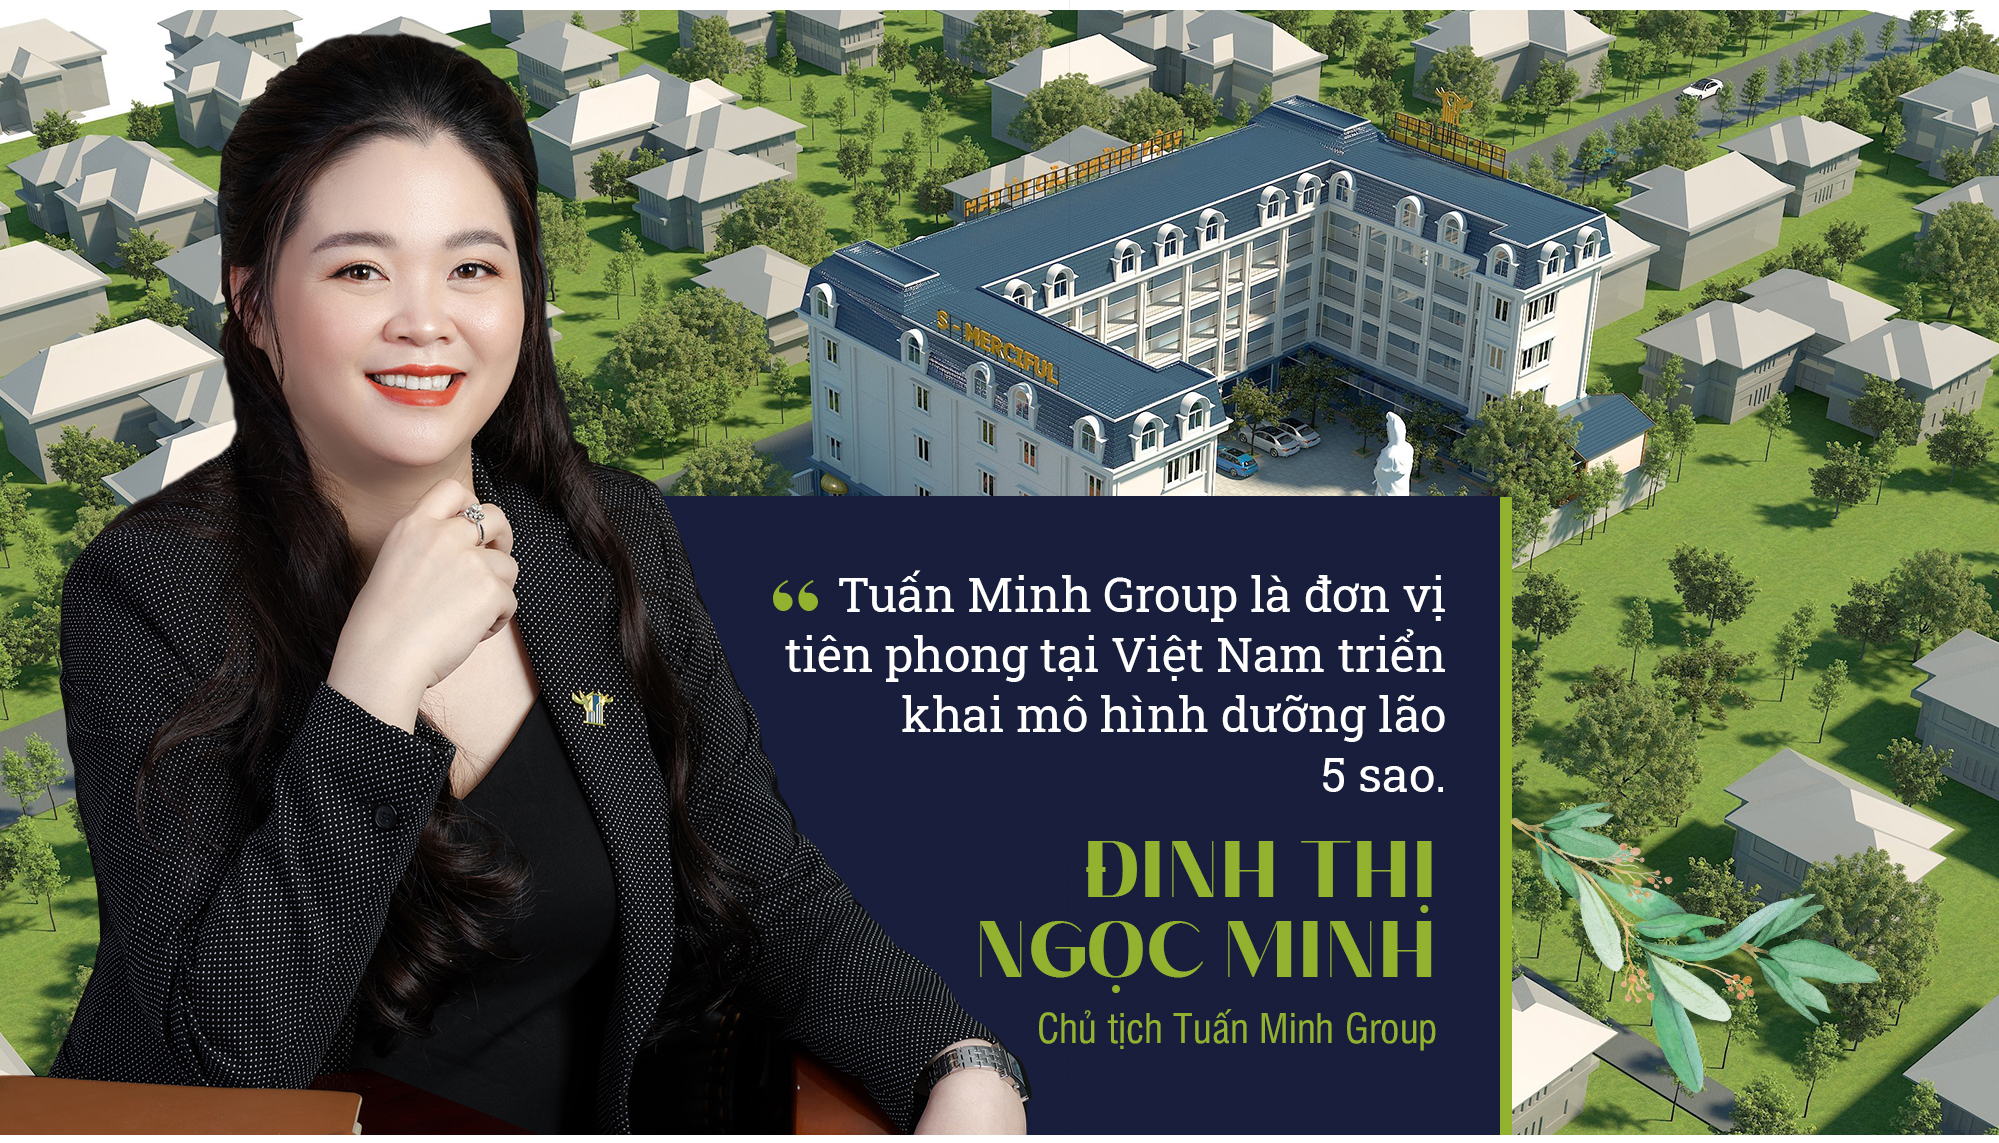 Chủ tịch Tuấn Minh Group Đinh Thị Ngọc Minh: “Người bất hạnh mới vào viện dưỡng lão là tư duy lỗi thời” - Ảnh 7.